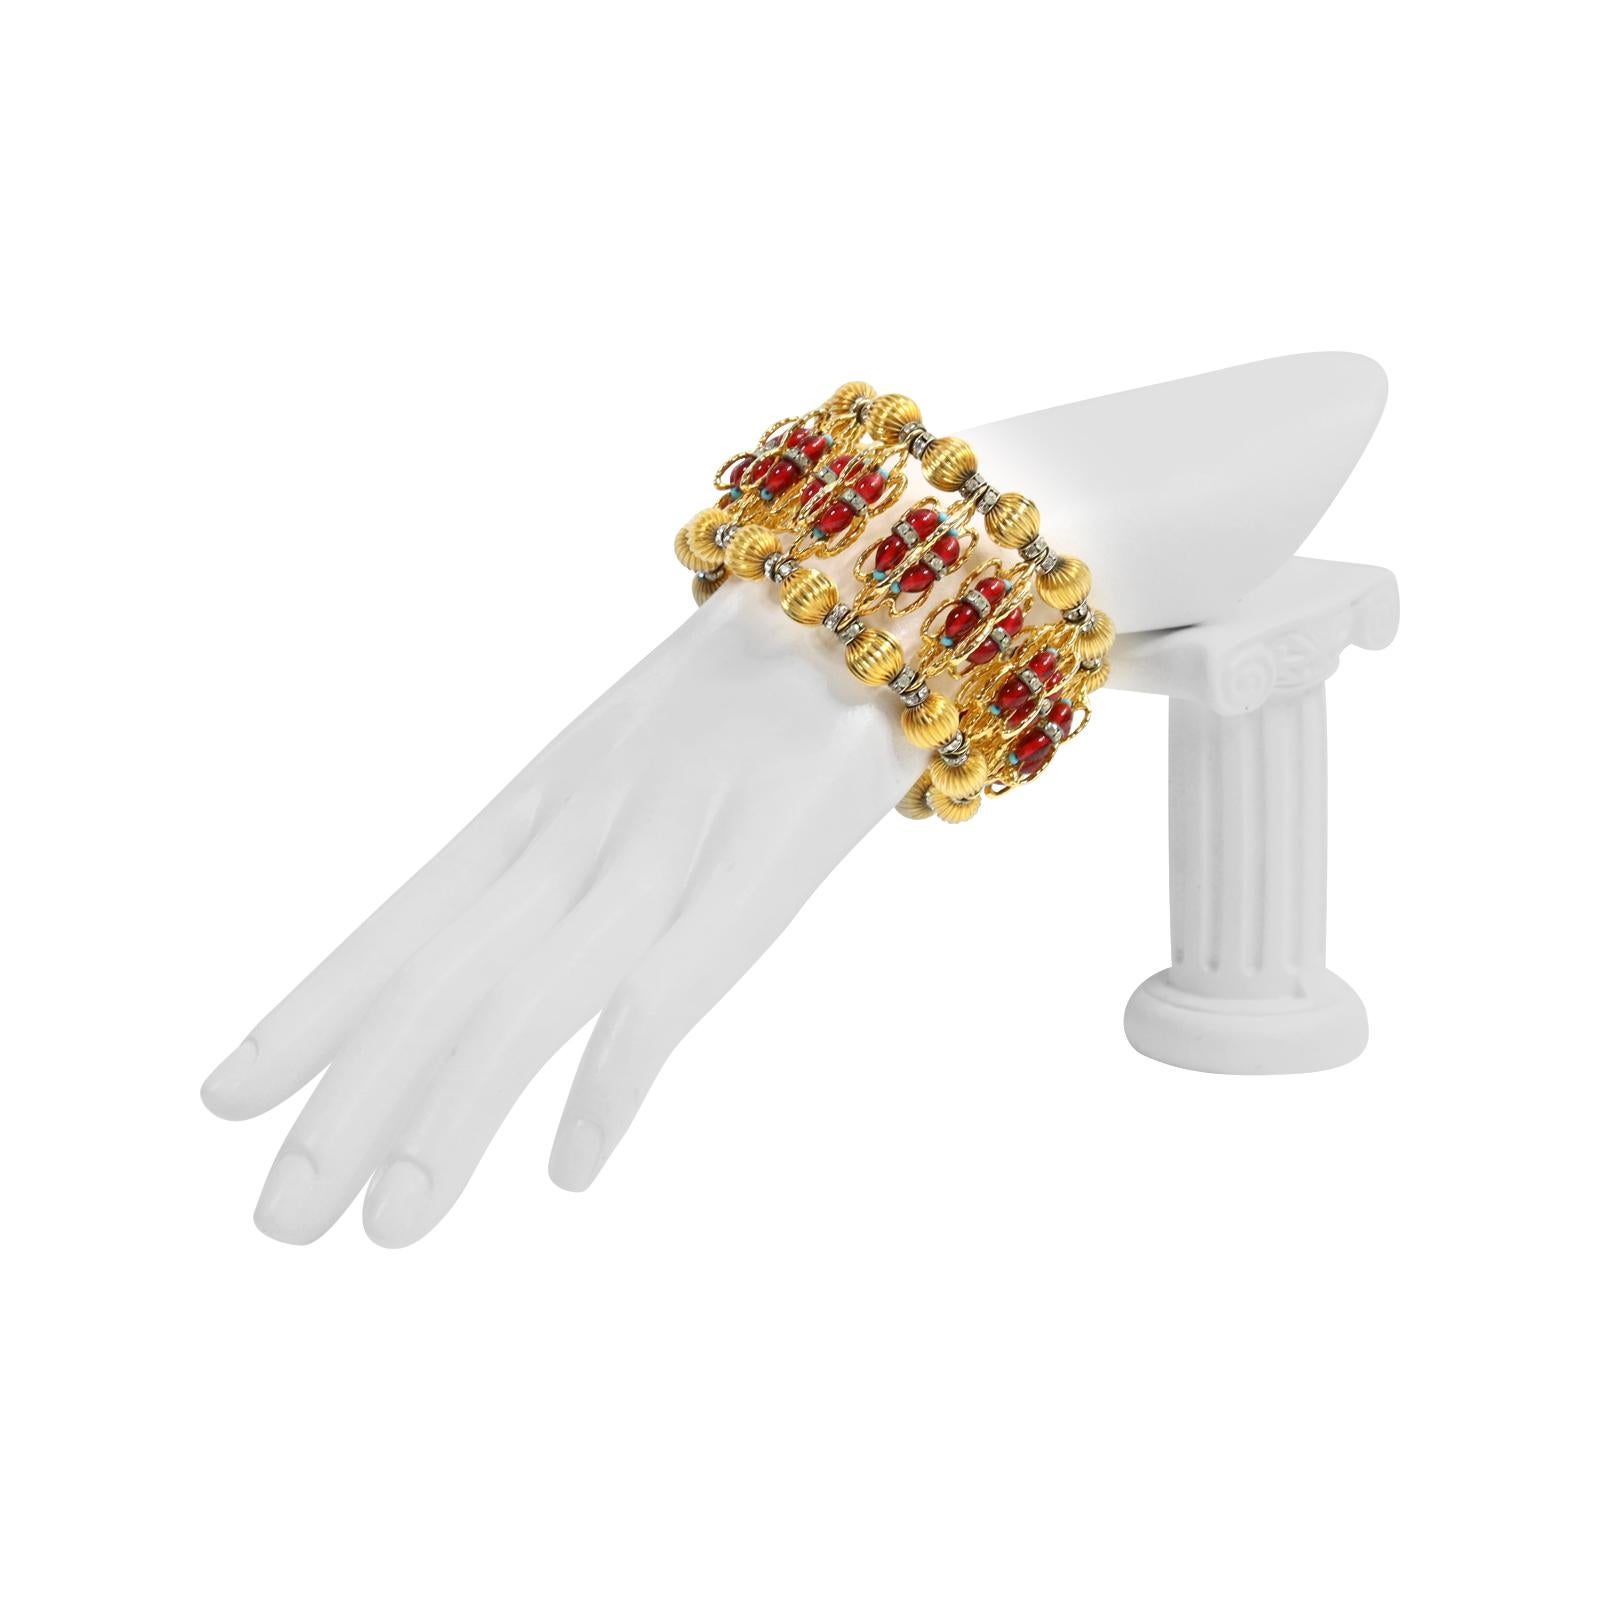 Vintage deLillo Gold Tone Armband mit roten Cabochons, Kristalle Faux Türkis.  Das sieht nach feinem Schmuck aus.  Kaum zu glauben, dass es aus den 1970er Jahren stammt.  
Das nenne ich eines der Meisterwerke von deLillo.

 William deLillo war nur 9